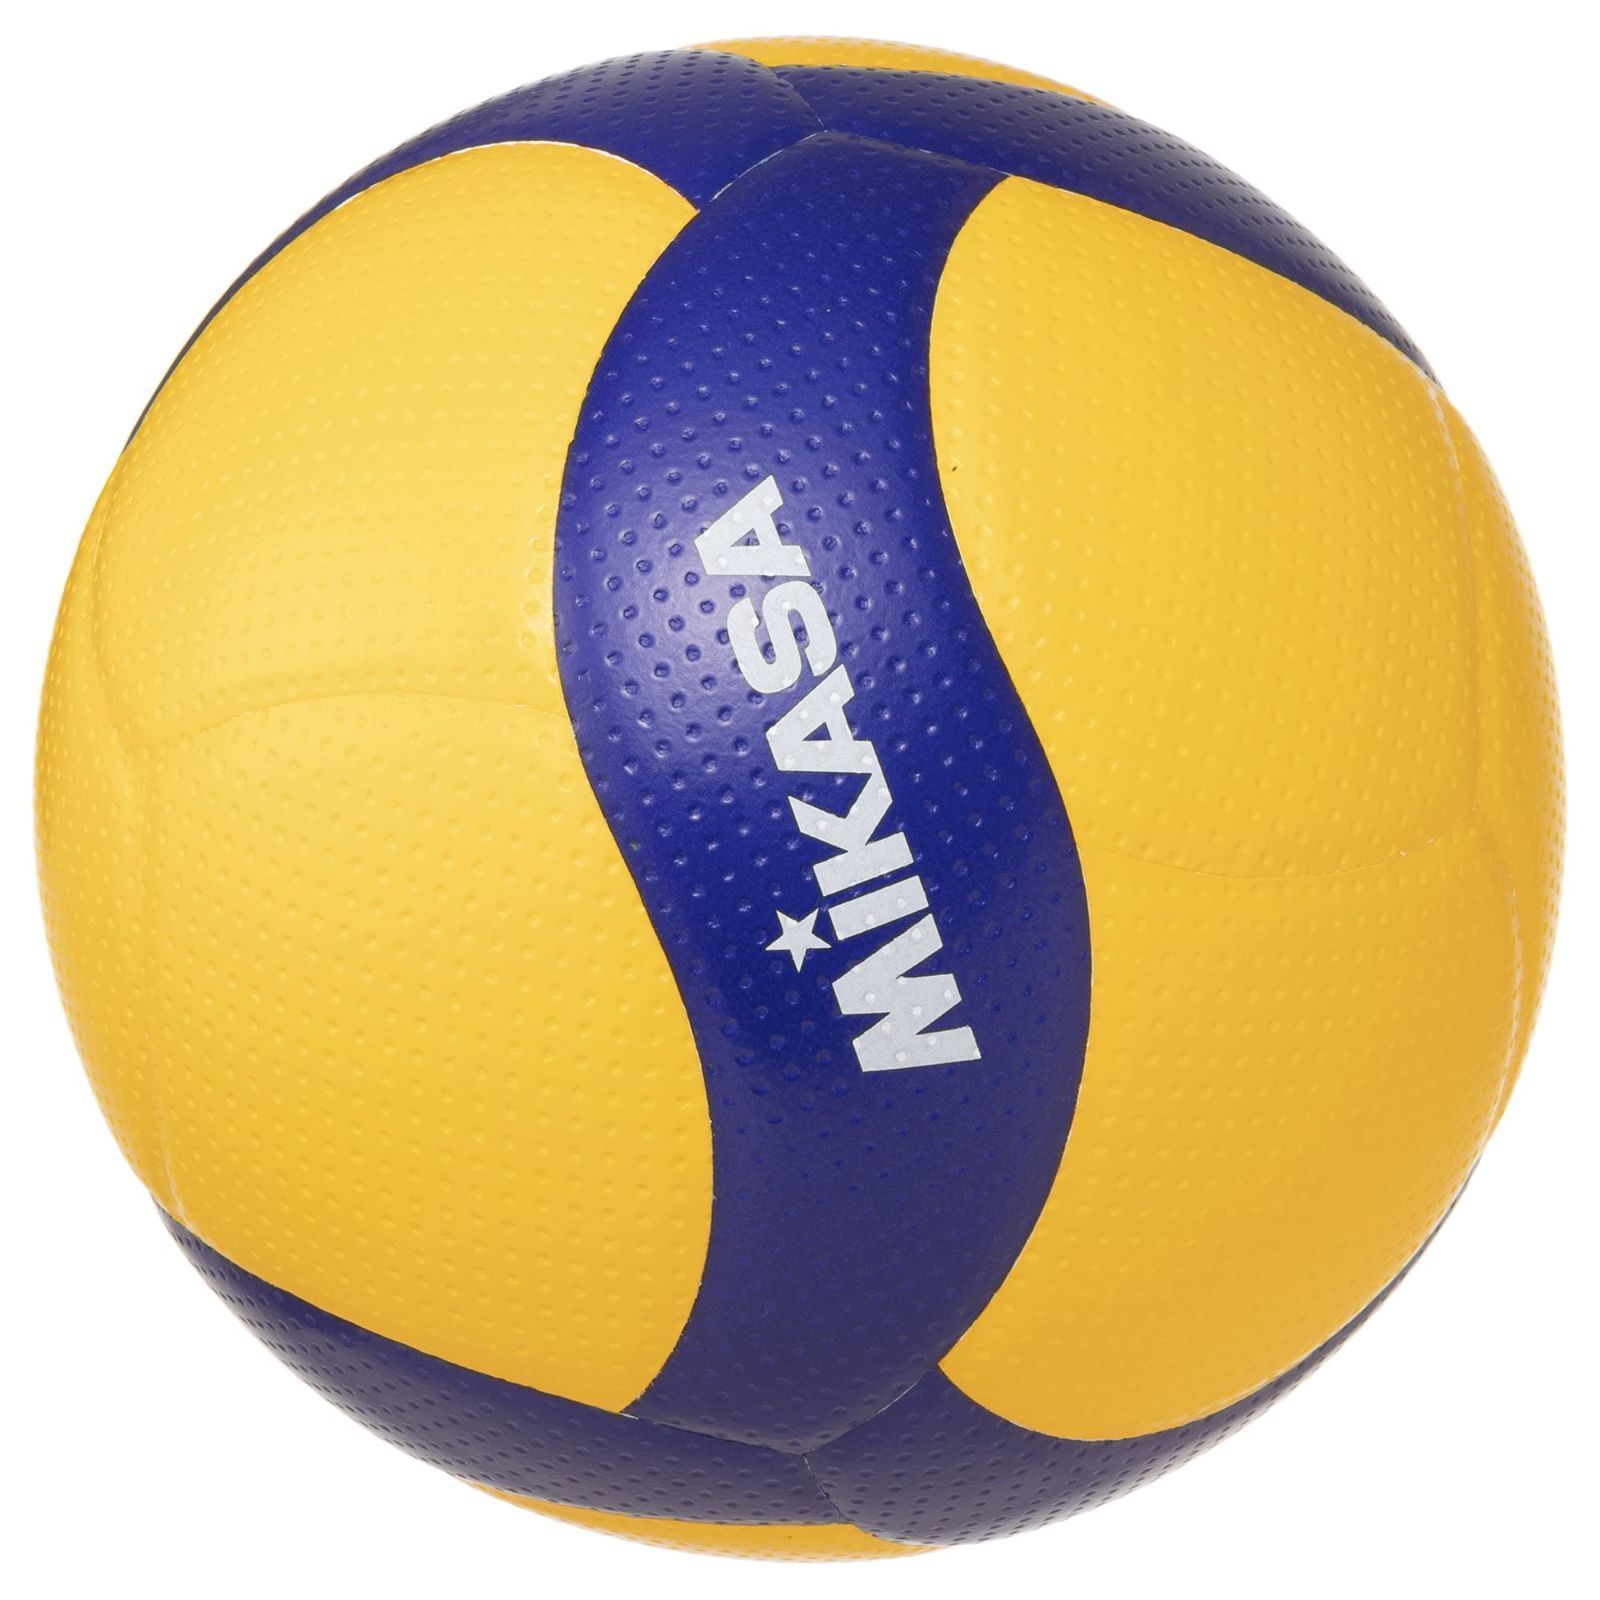 売れ筋介護用品も！ ミカサ 小学生バレーボール 検定球4号軽量 V400W-L 2019年新デザイン